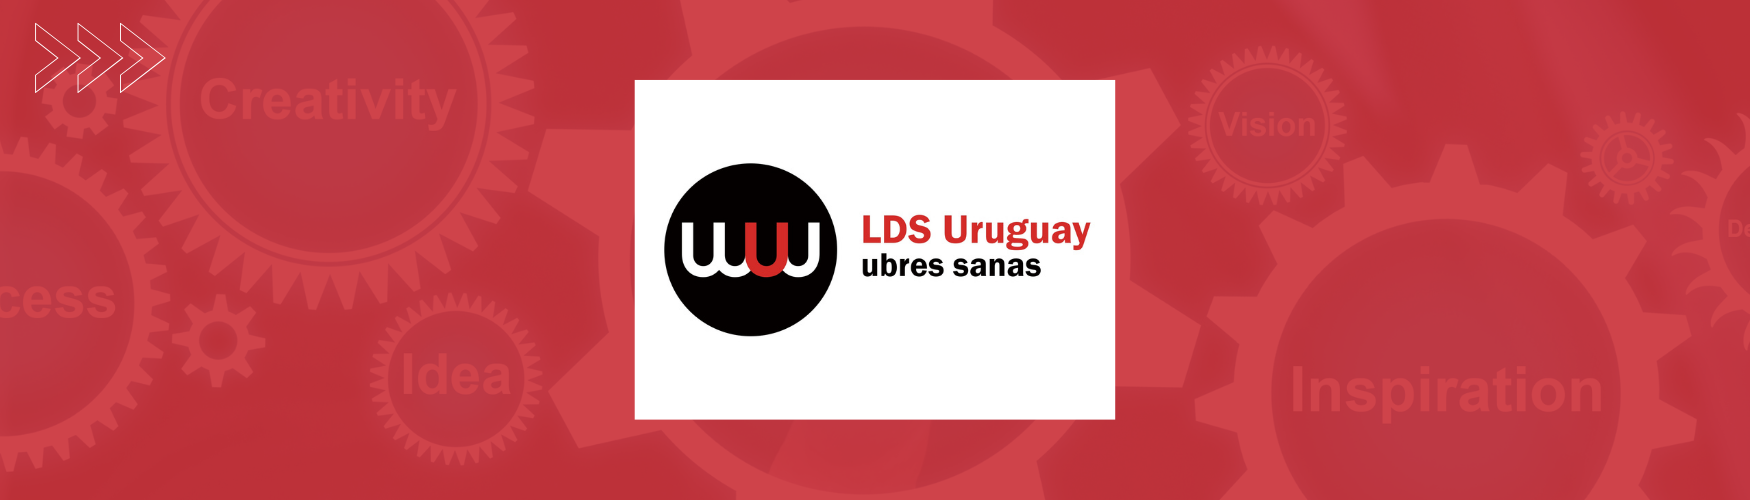 LDS Uruguay